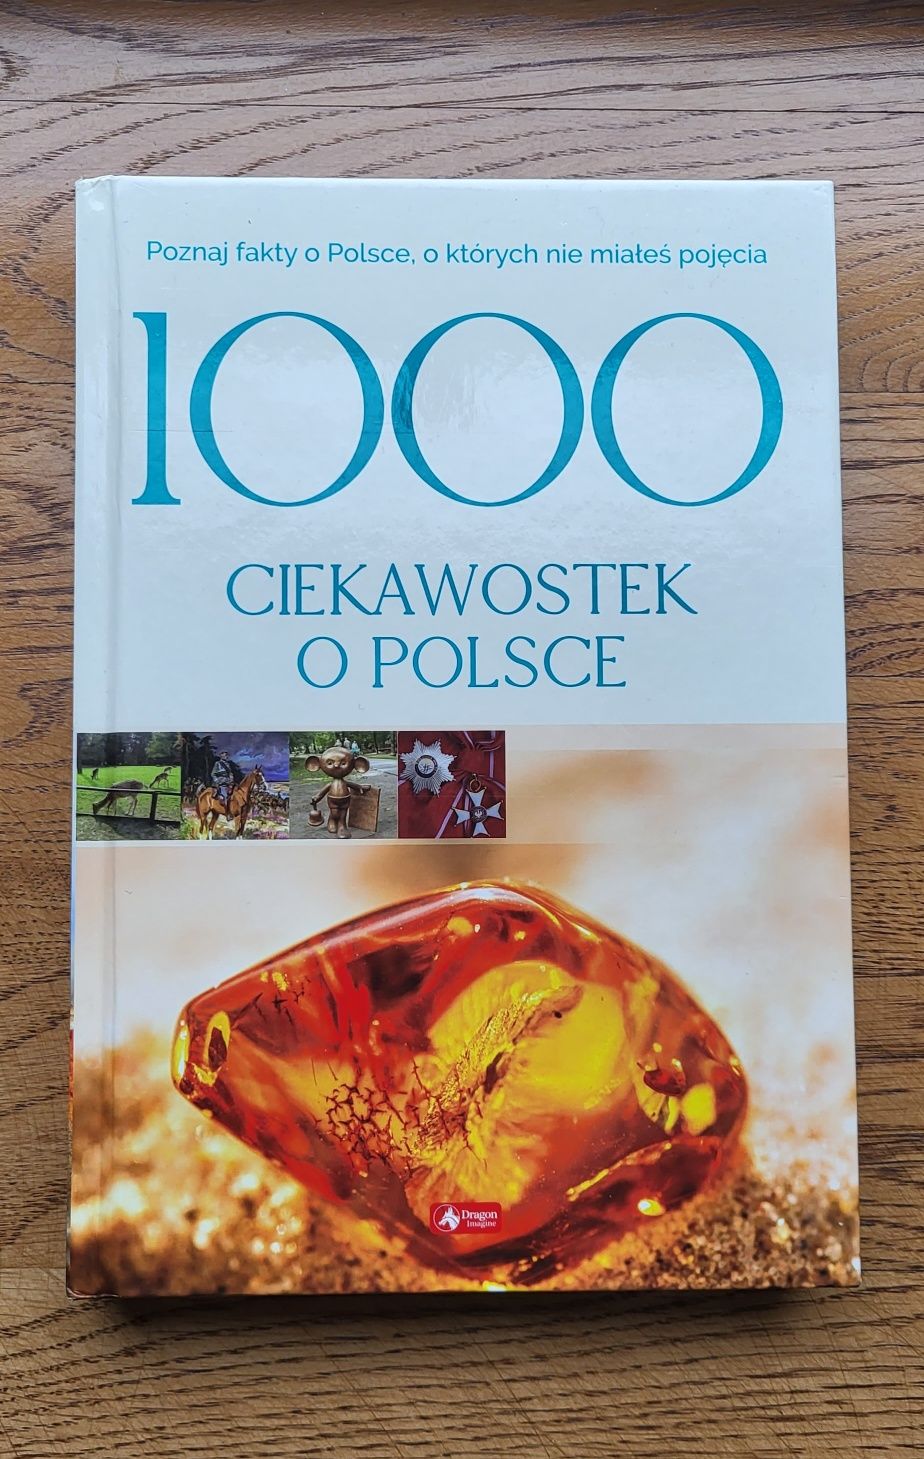 1000 ciekawostek o Polsce